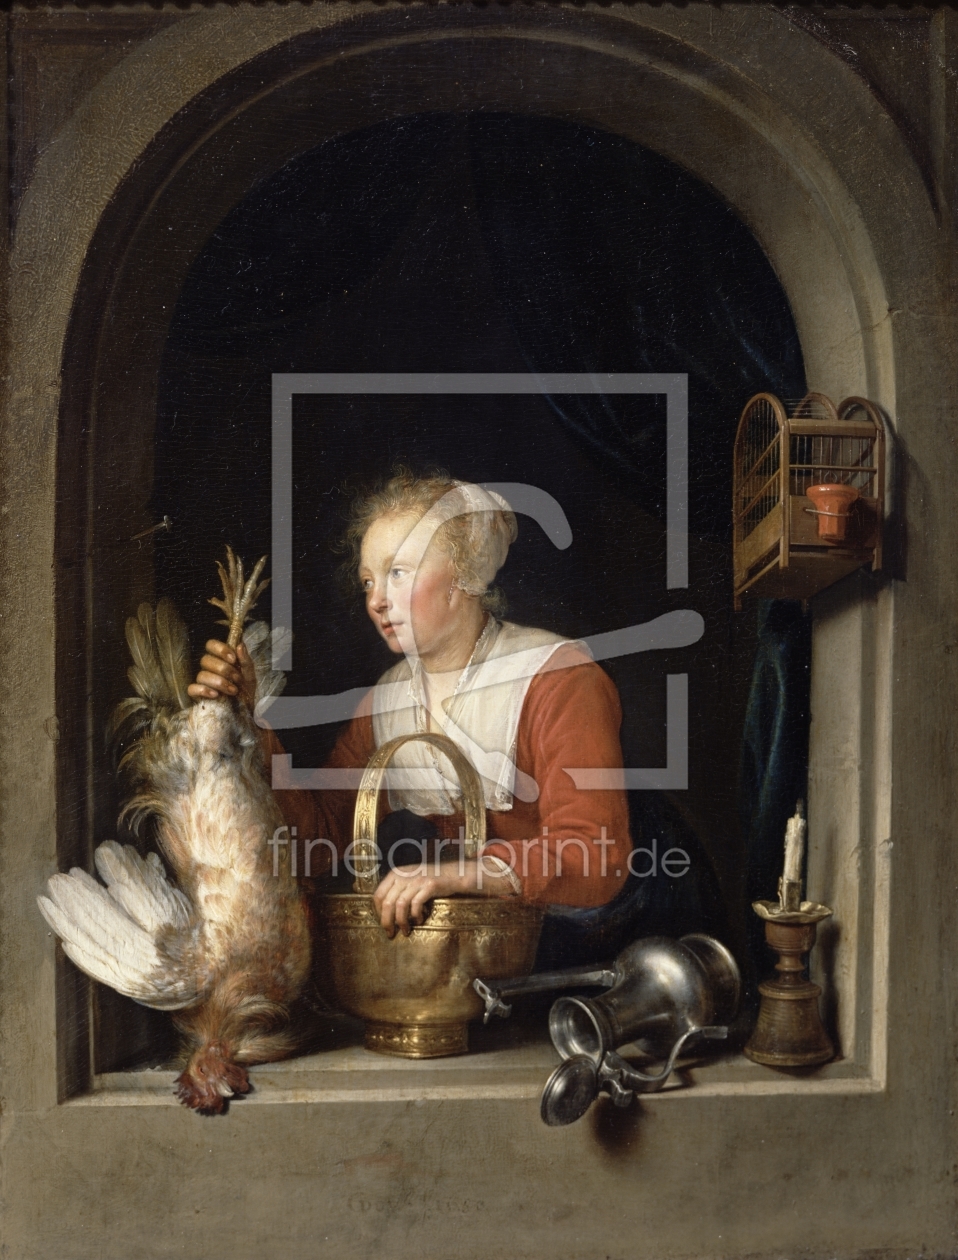 Bild-Nr.: 31000337 The Dutch Housewife or, The Woman Hanging a Cockerel in the Window, 1650 erstellt von Dou, Gerard